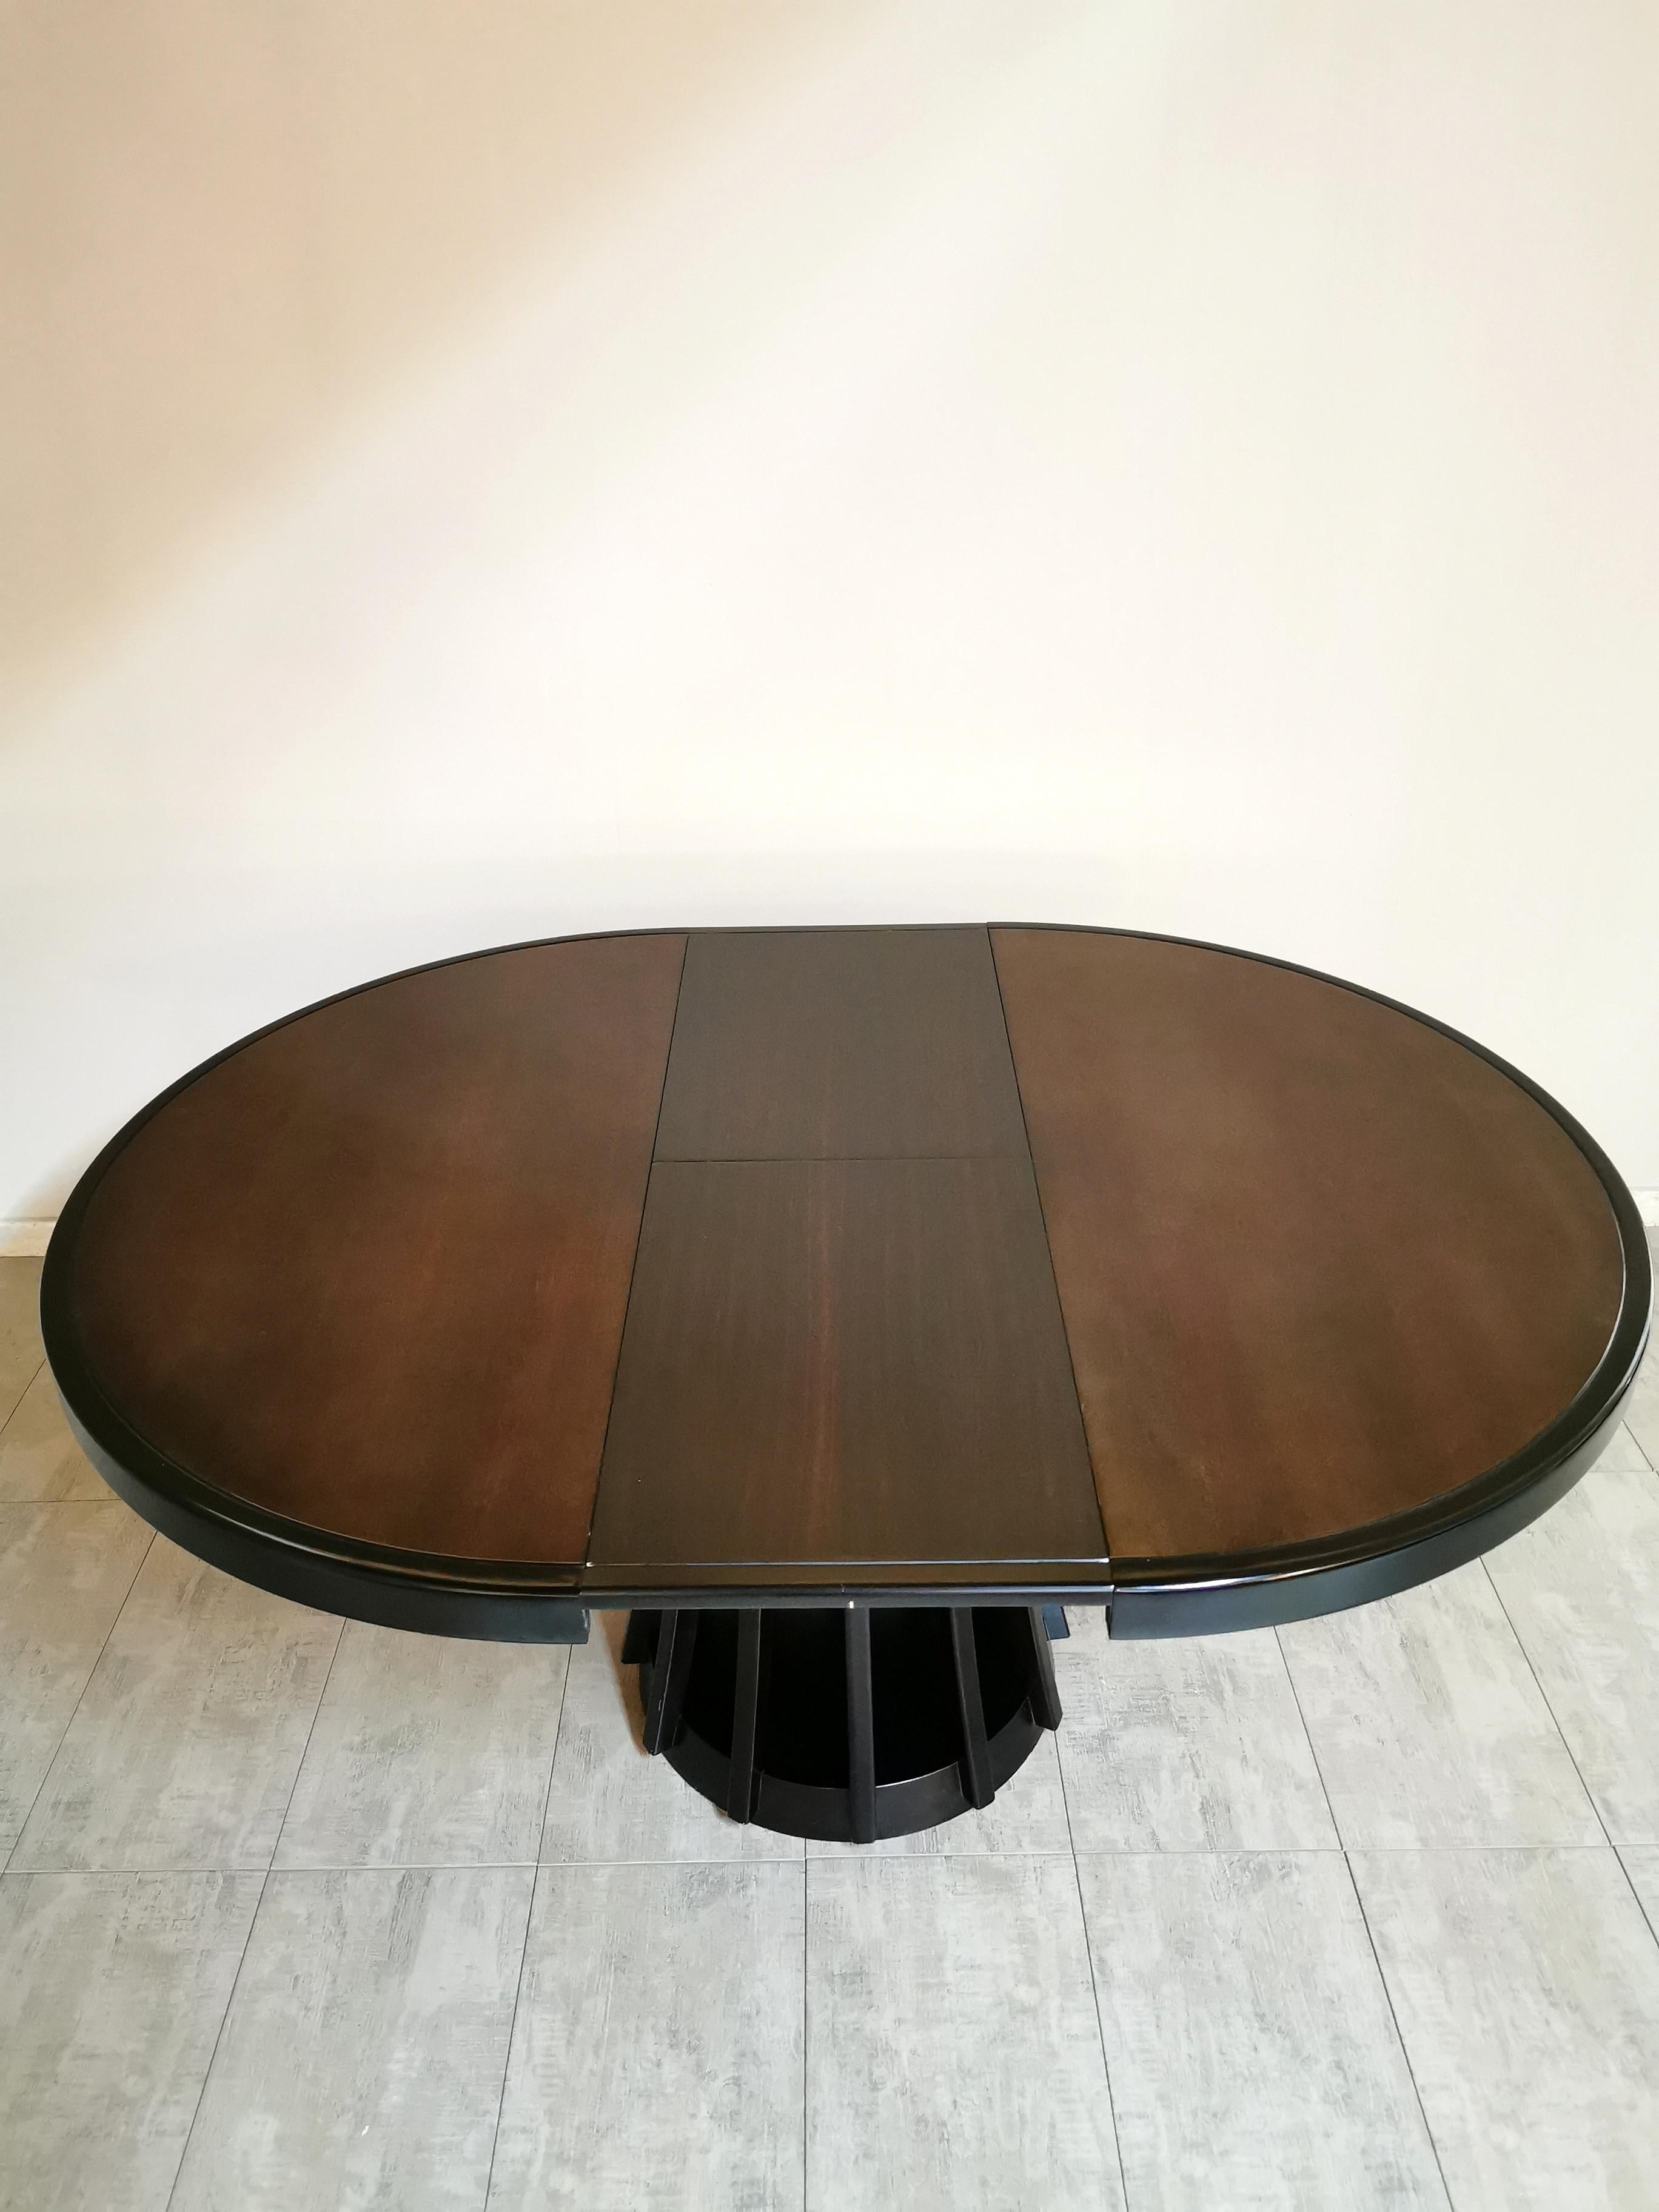  Dining Room Table Wood Angelo Mangiarotti Mid Century Italian Design 1972s 1